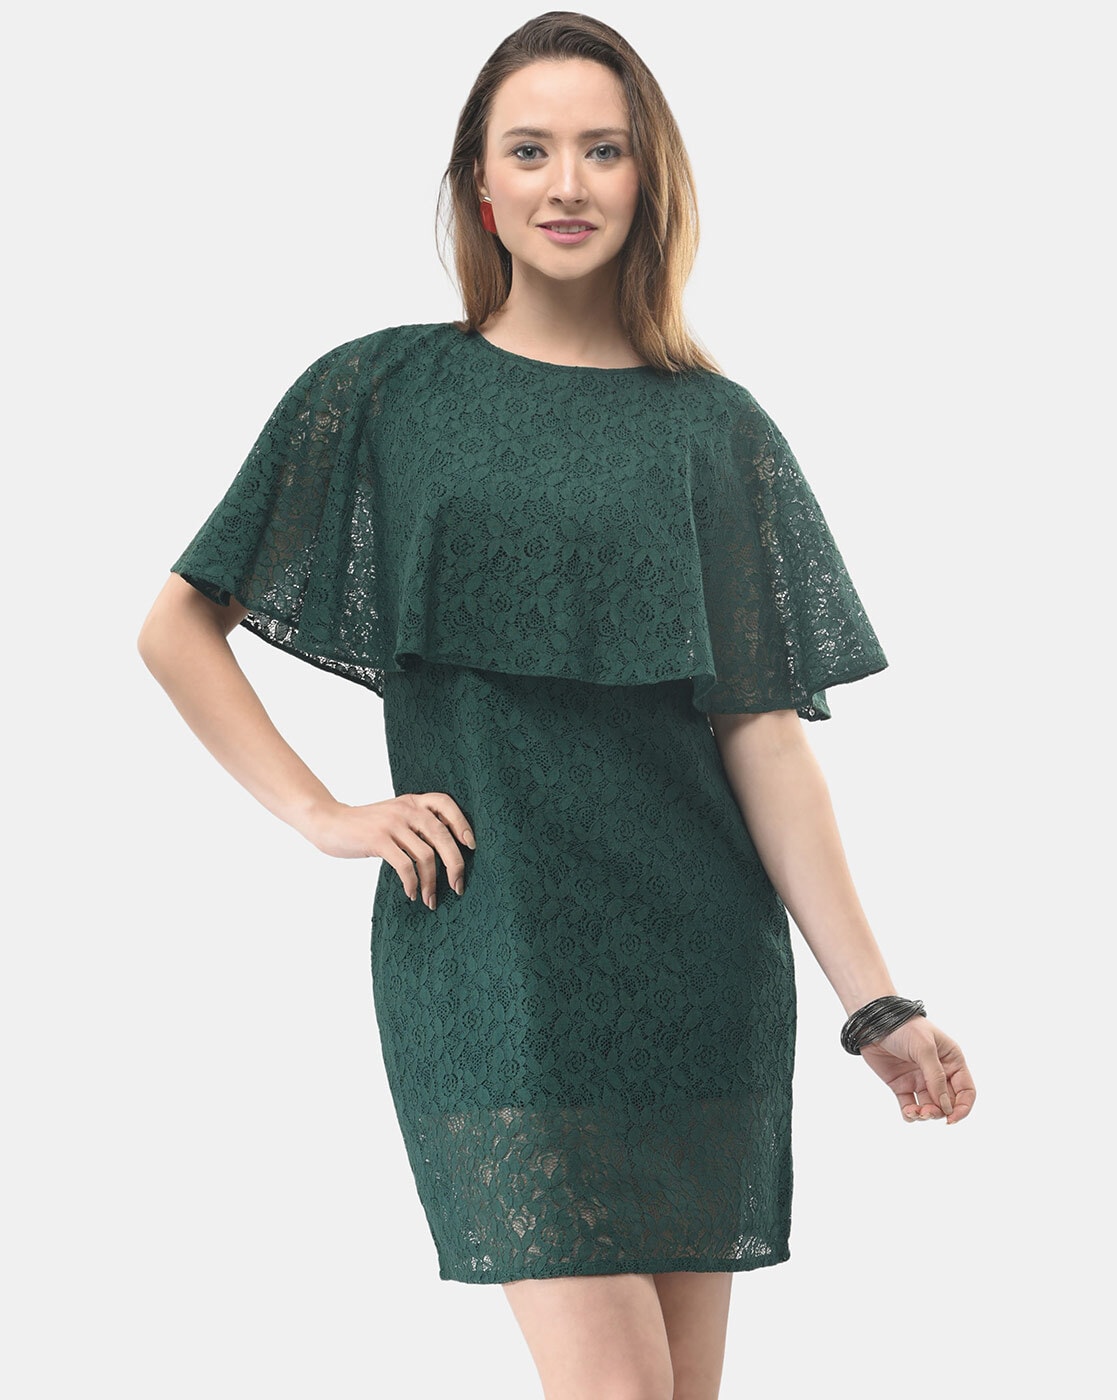 BACKORDER - Florsa Cold Shoulder Lace Dress | I.Silhouette